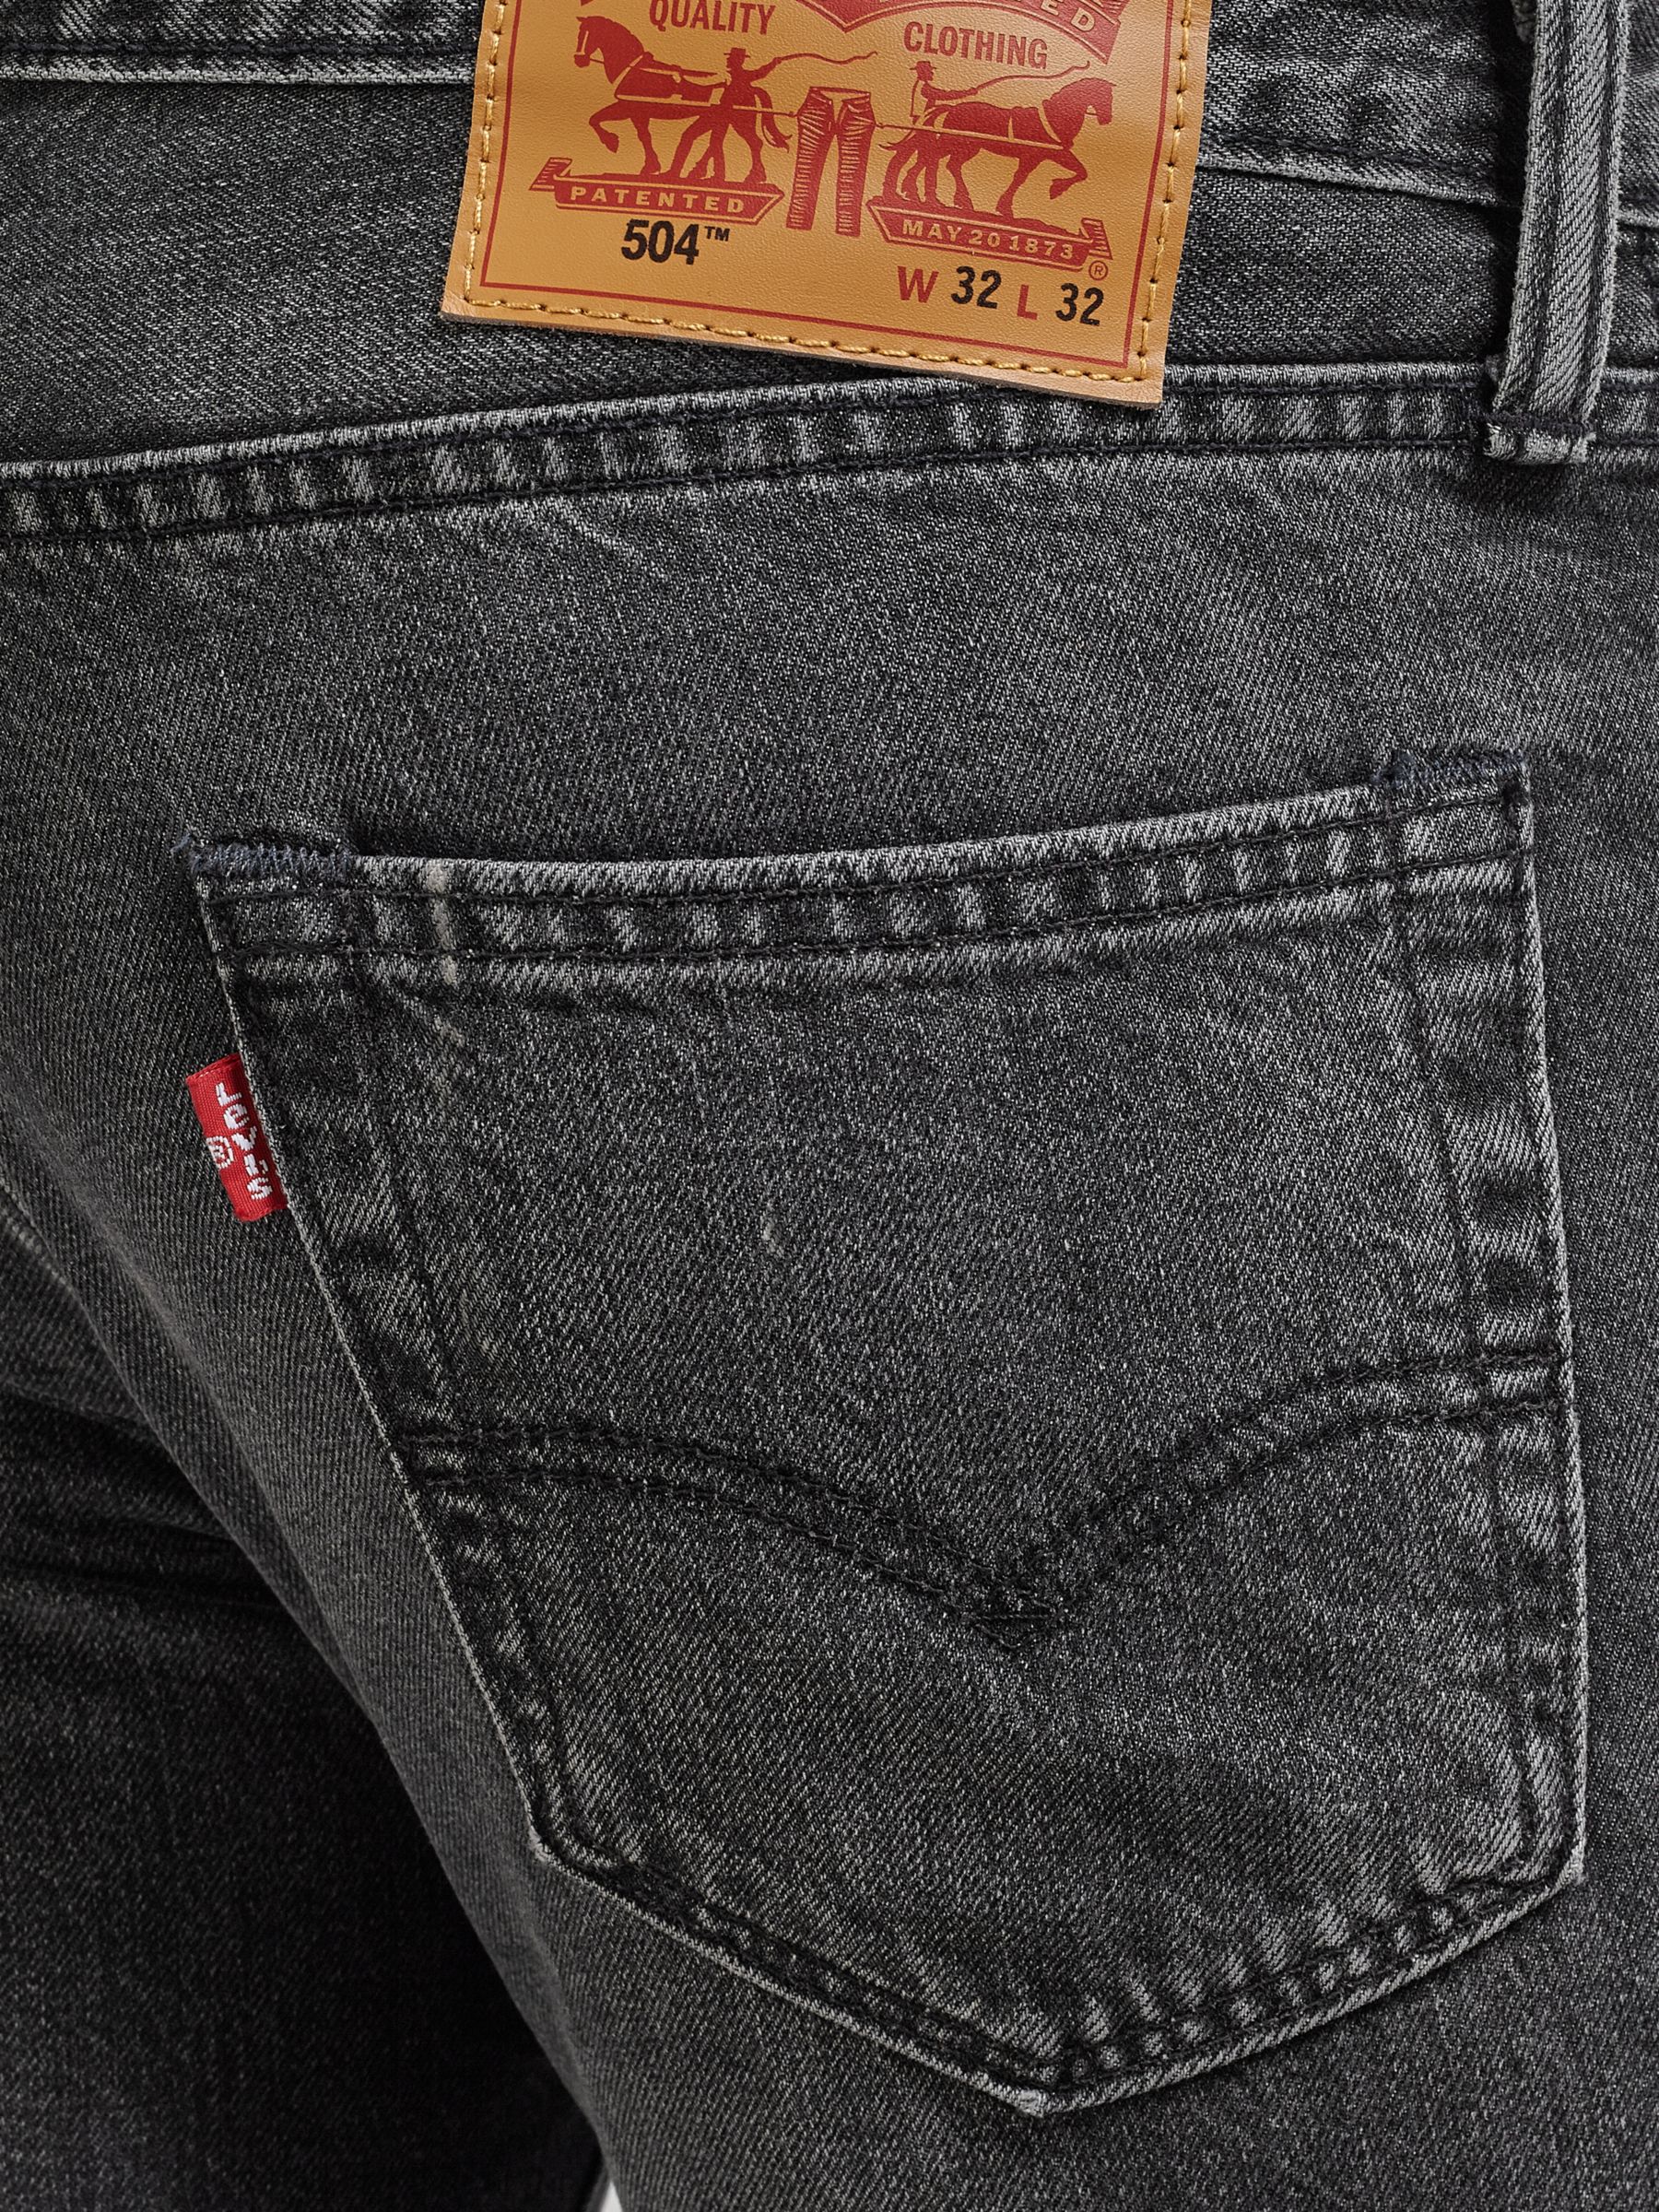 levi's men's 504 straight fit jeans